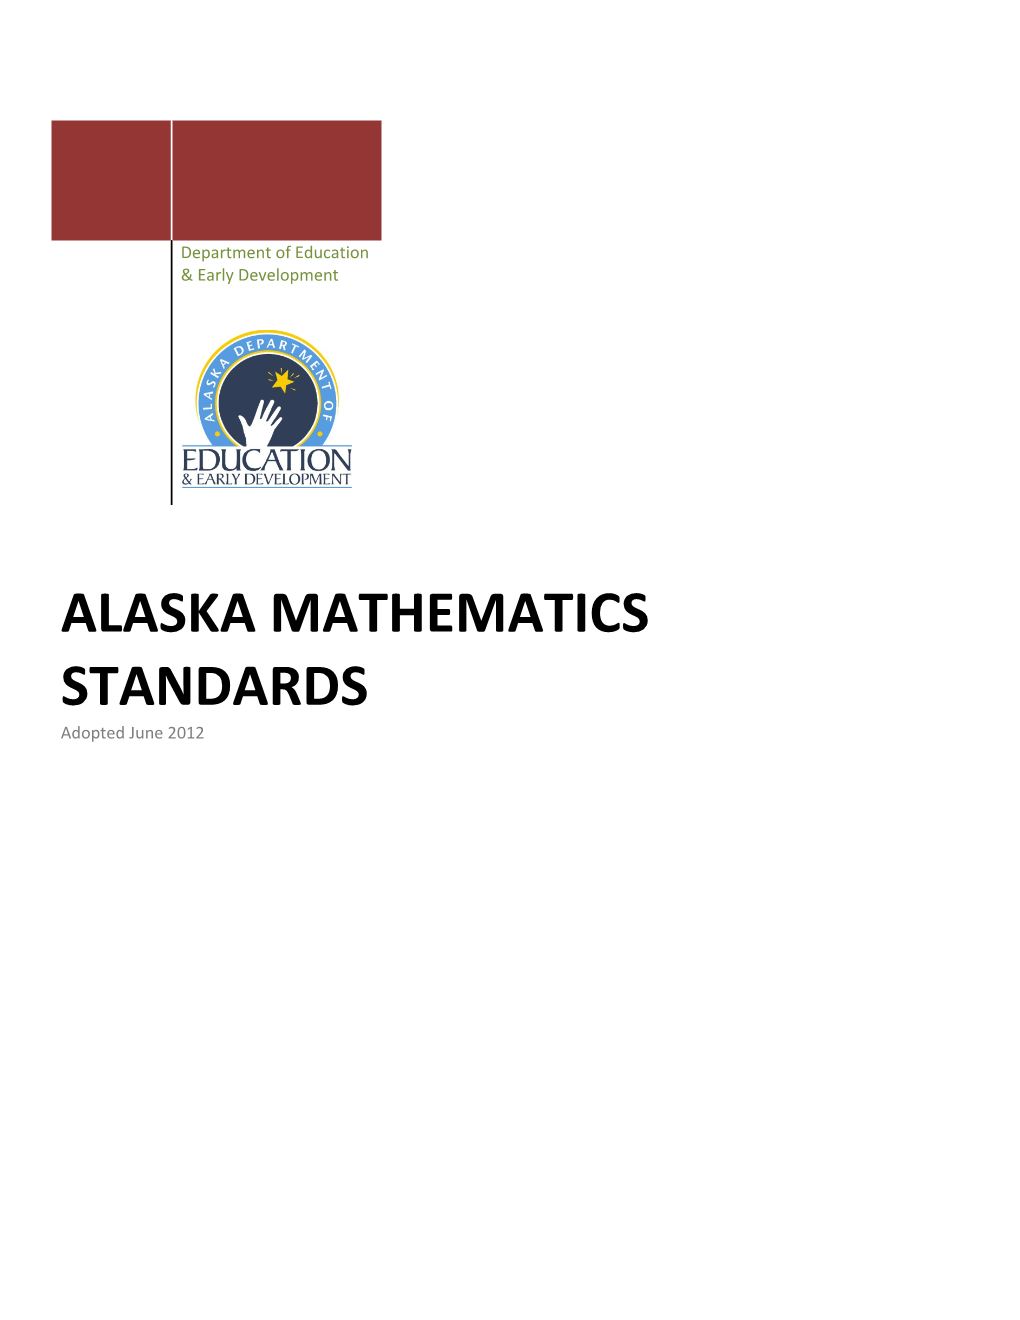 Alaska Board of Education & Early Development